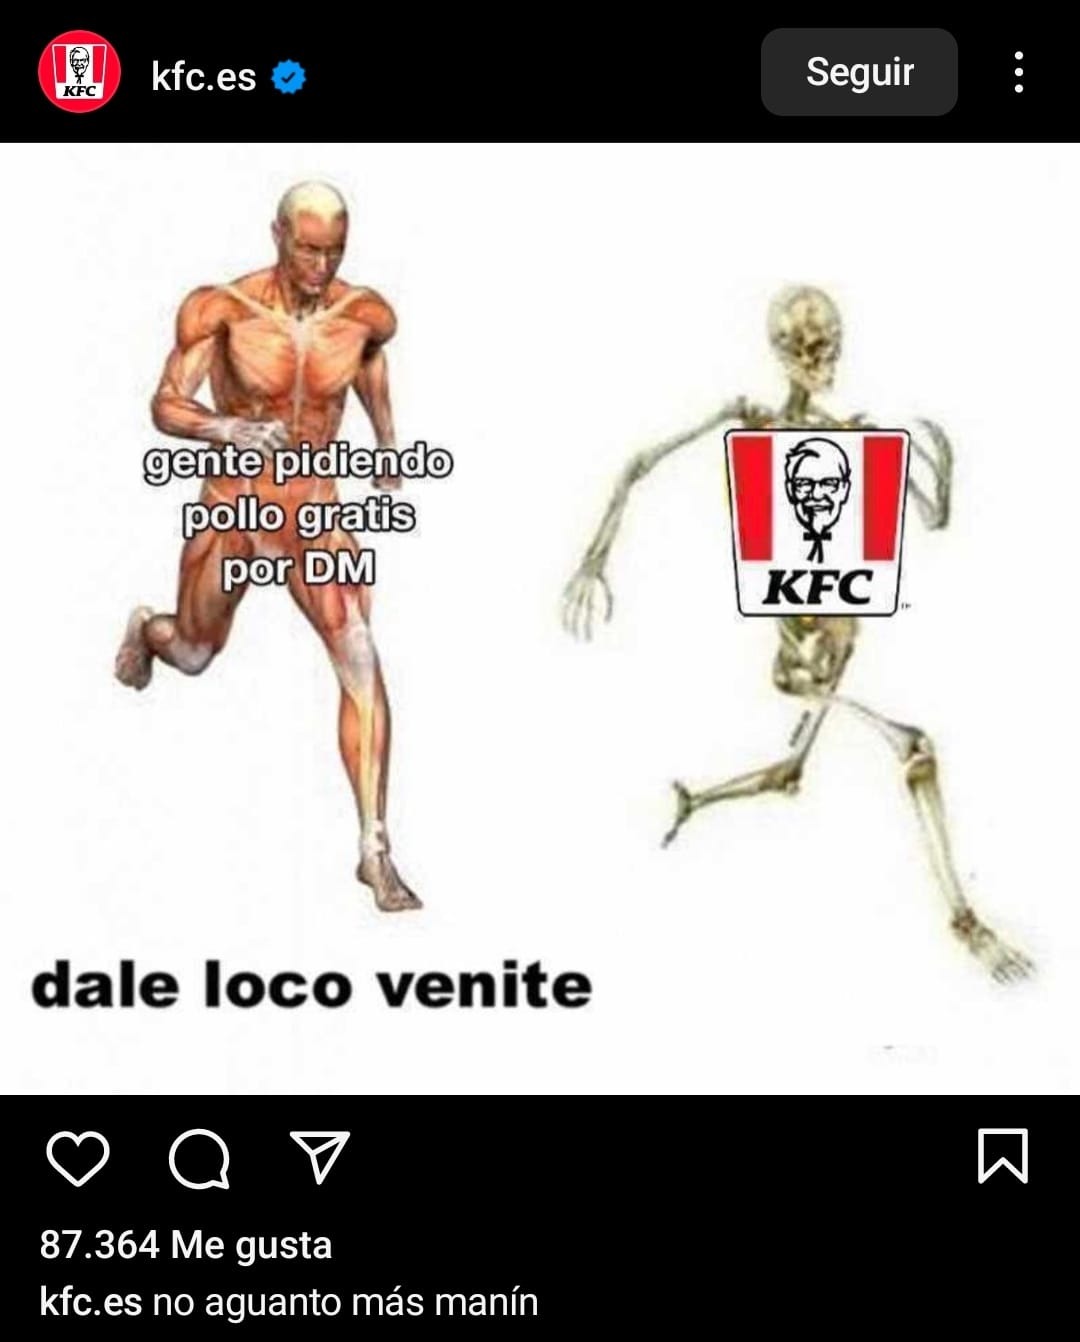 El instagram oficial de KFC xd - meme